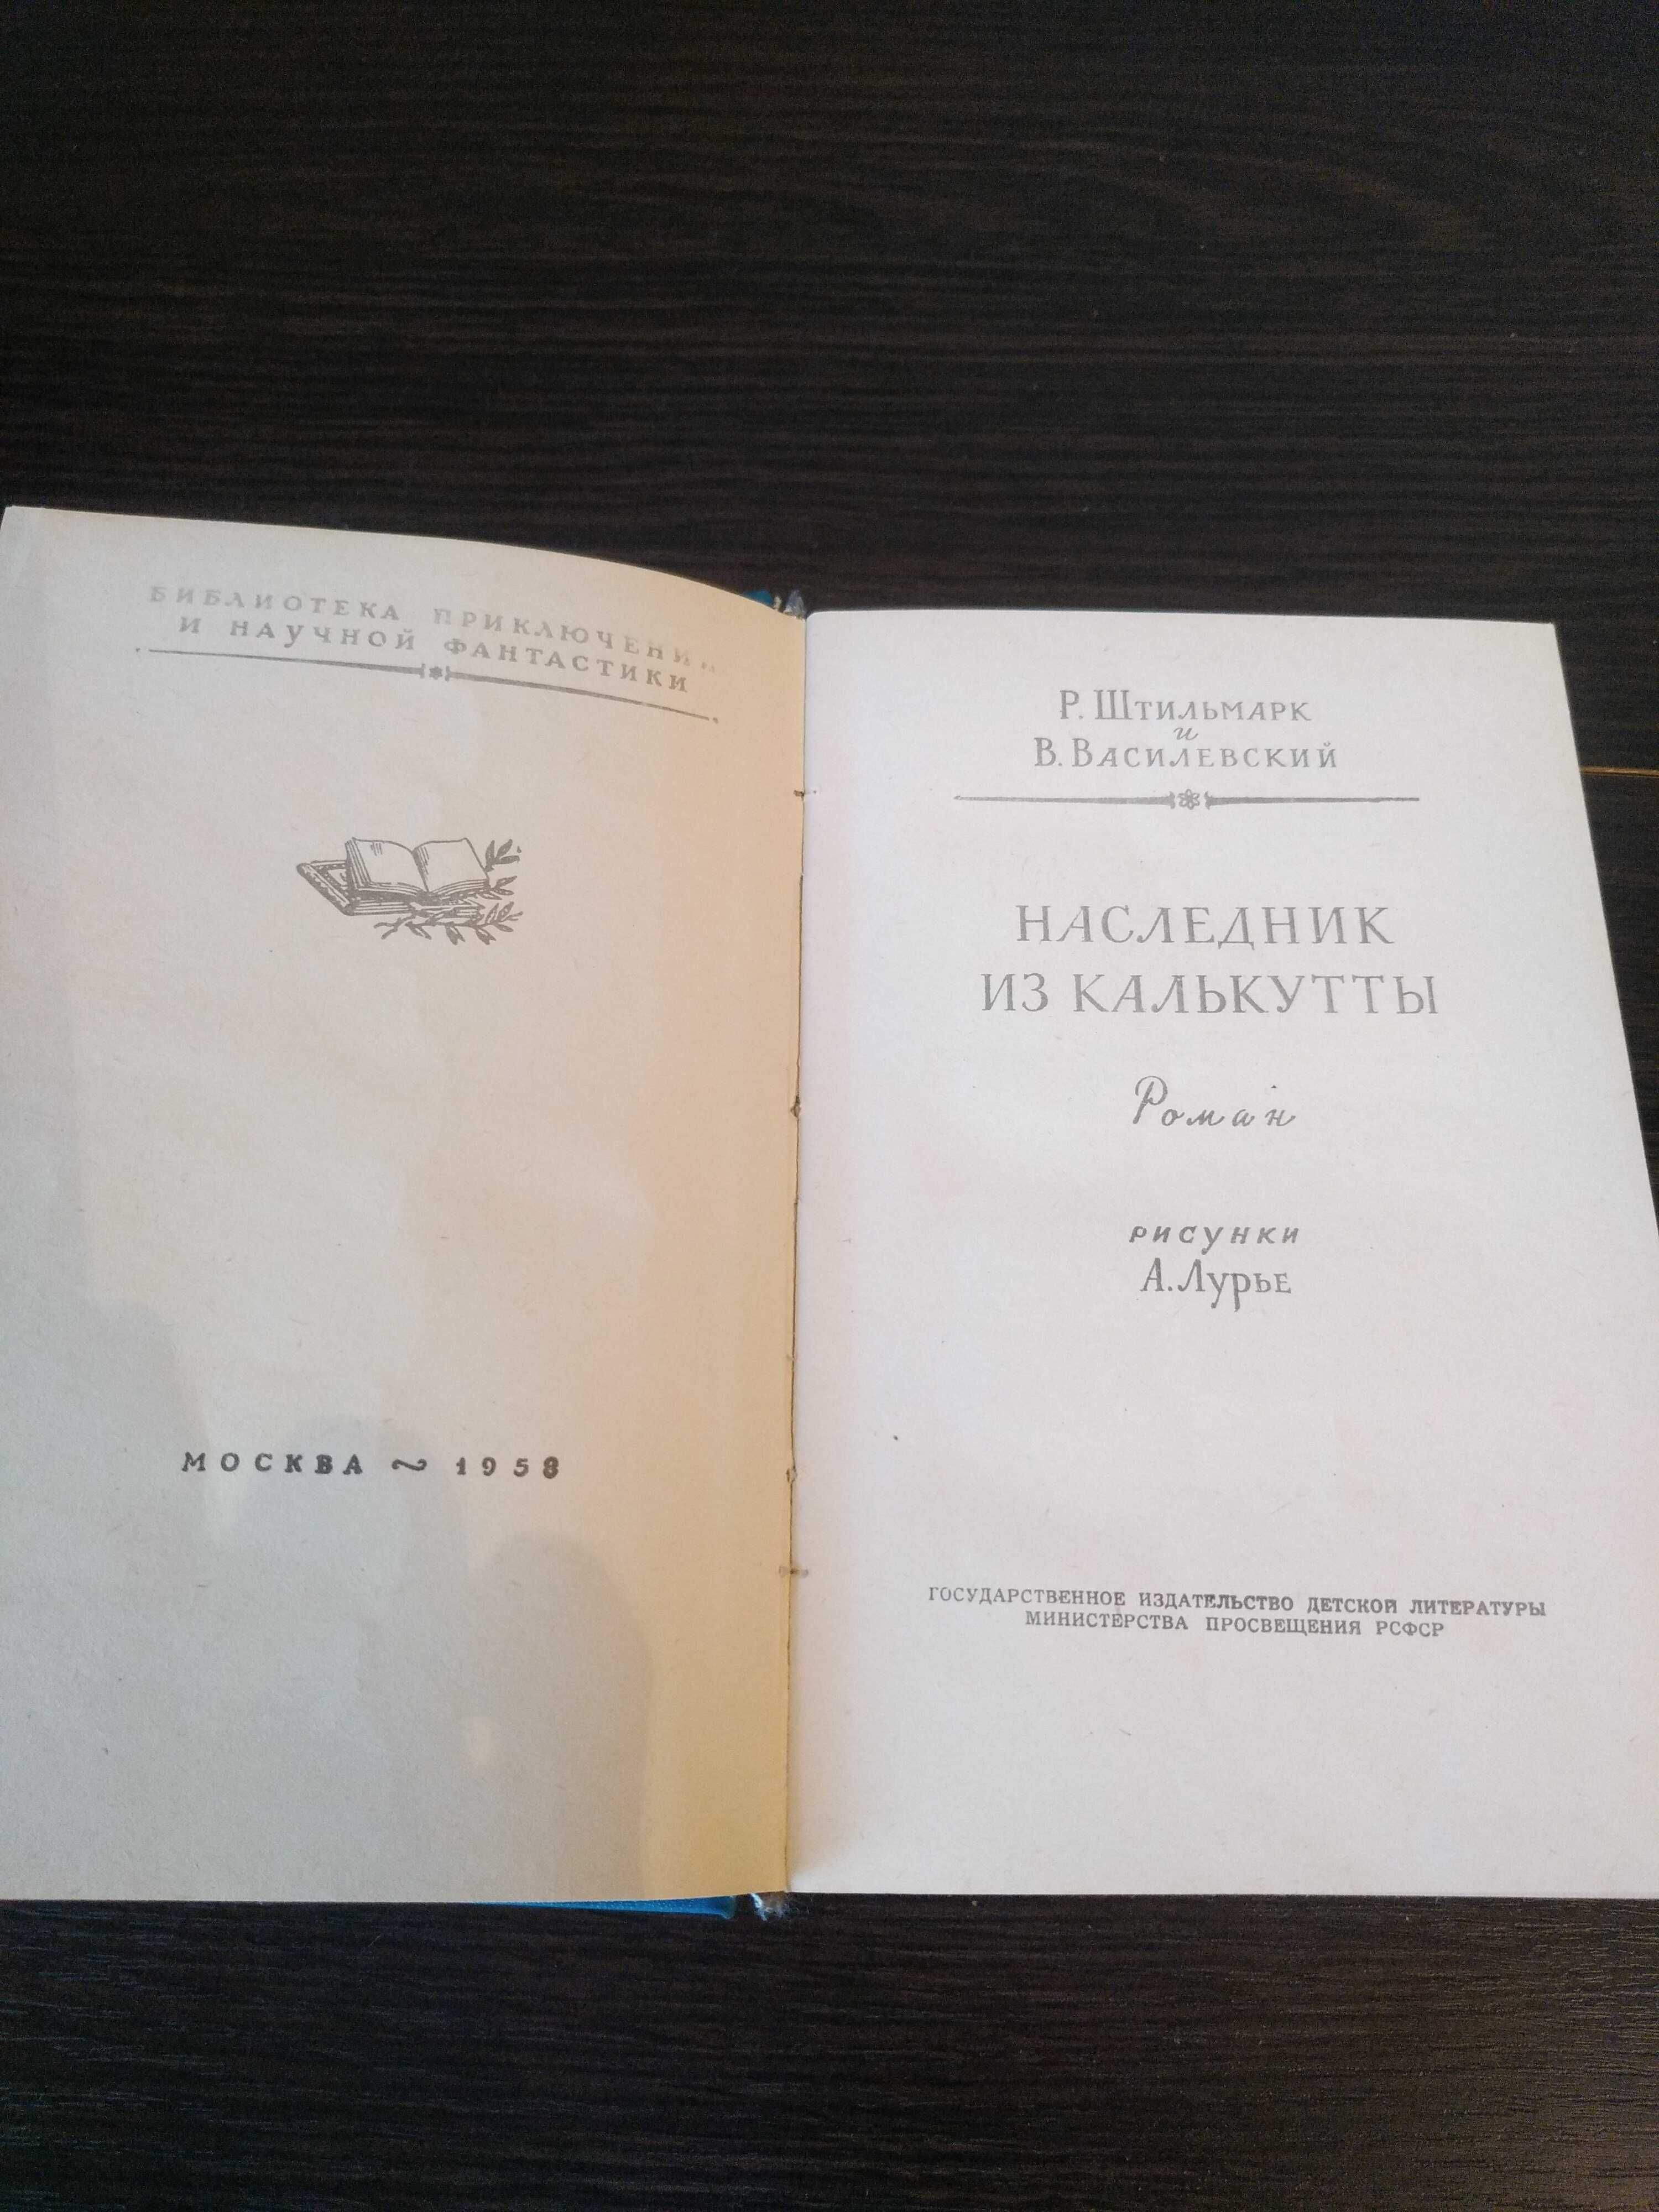 Продам книгу "Наследник из Калькутты"  Штильмарк и Василевский